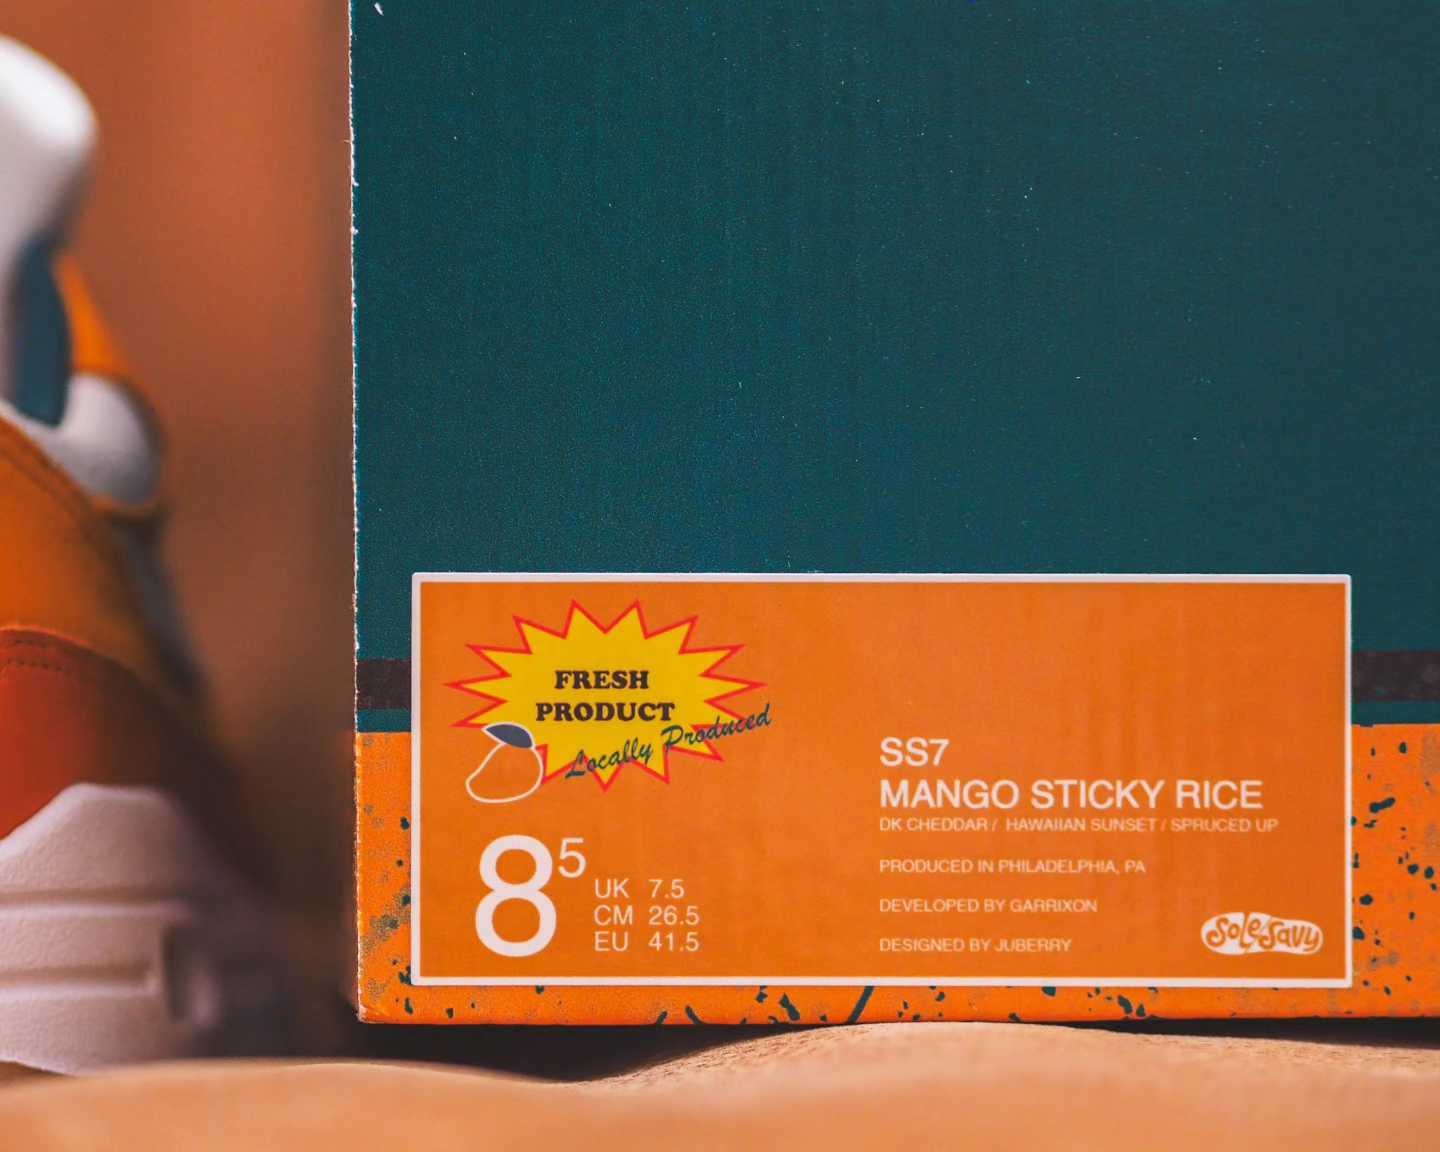 SS7 Mango Sticky Rice by Juberry